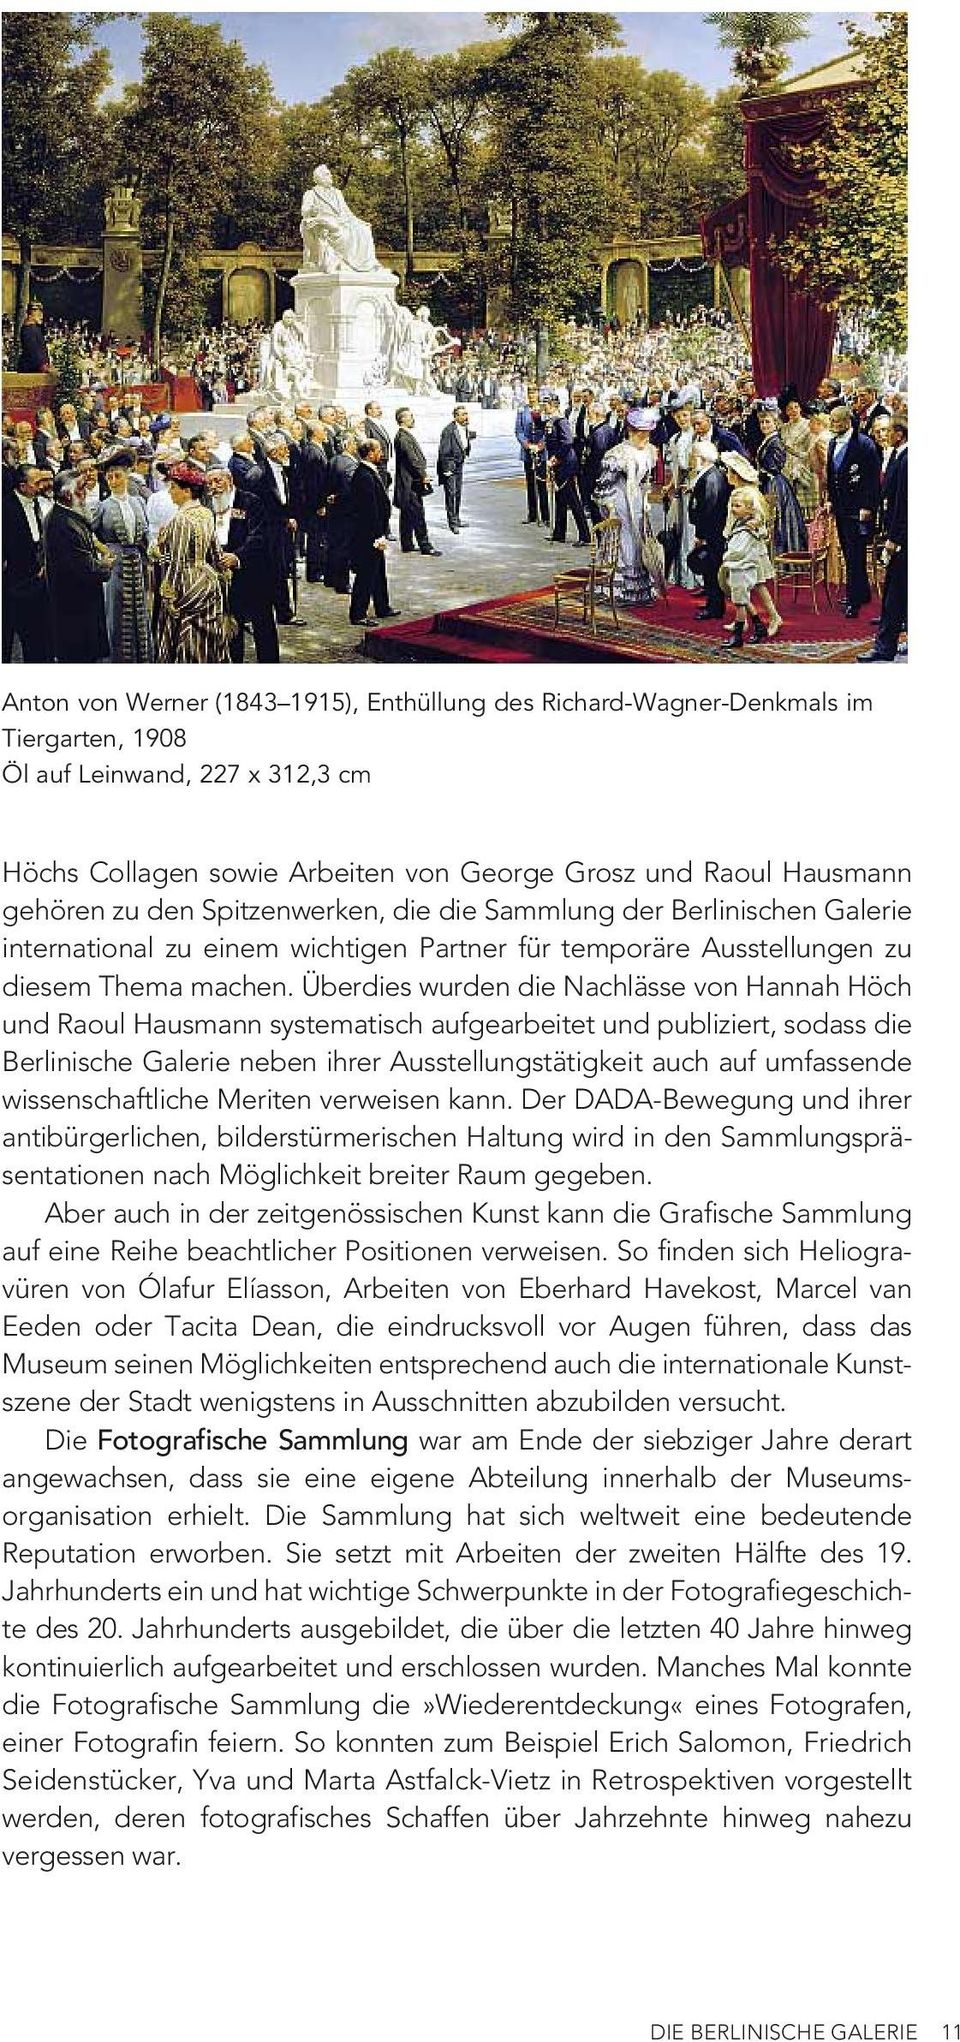 Überdies wurden die Nachlässe von Hannah Höch und Raoul Hausmann systematisch aufgearbeitet und publiziert, sodass die Berlinische Galerie neben ihrer Ausstellungstätigkeit auch auf umfassende